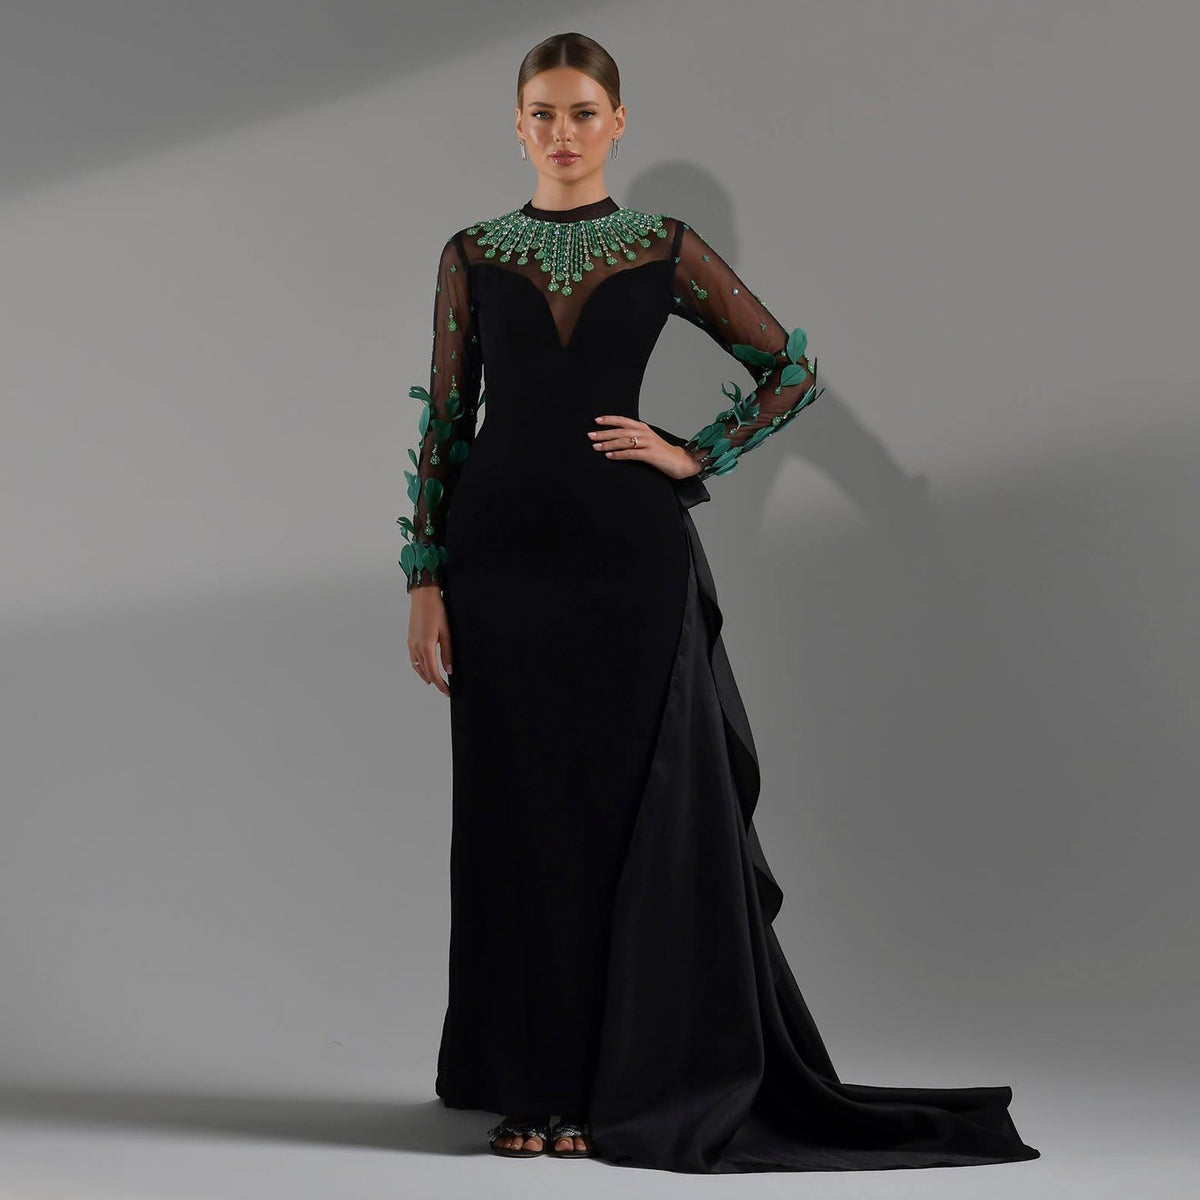 شارون سعيد فاخر دبي الزمرد الأخضر الريش الأسود فستان سهرة بأكمام طويلة المملكة العربية السعودية المرأة رداء حفلات رسمية SS457